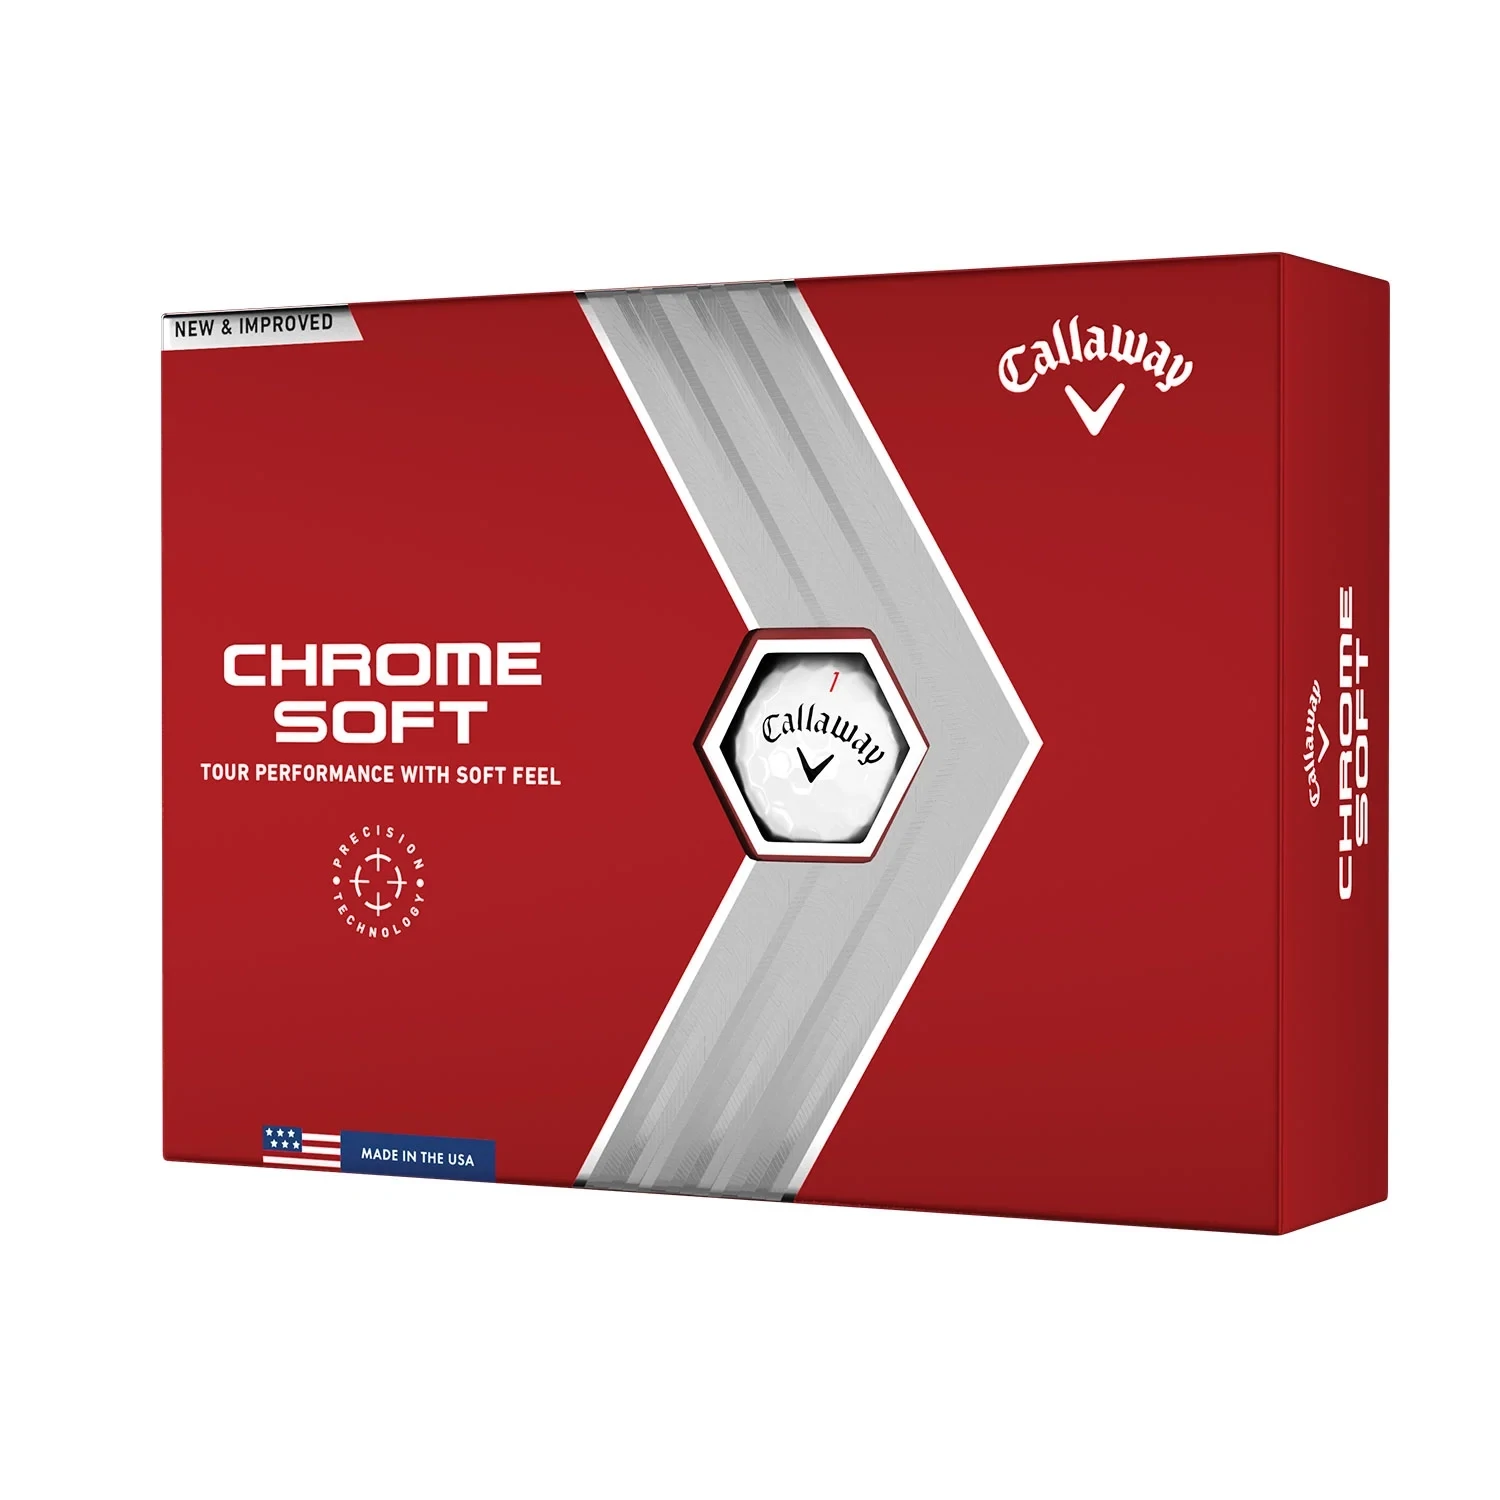 CALLAWAY - CHROME SOFT - Bolas de Golf de 3 Capas con Sensación Blanda y Vuelo Recto - Caja de 12 bolas